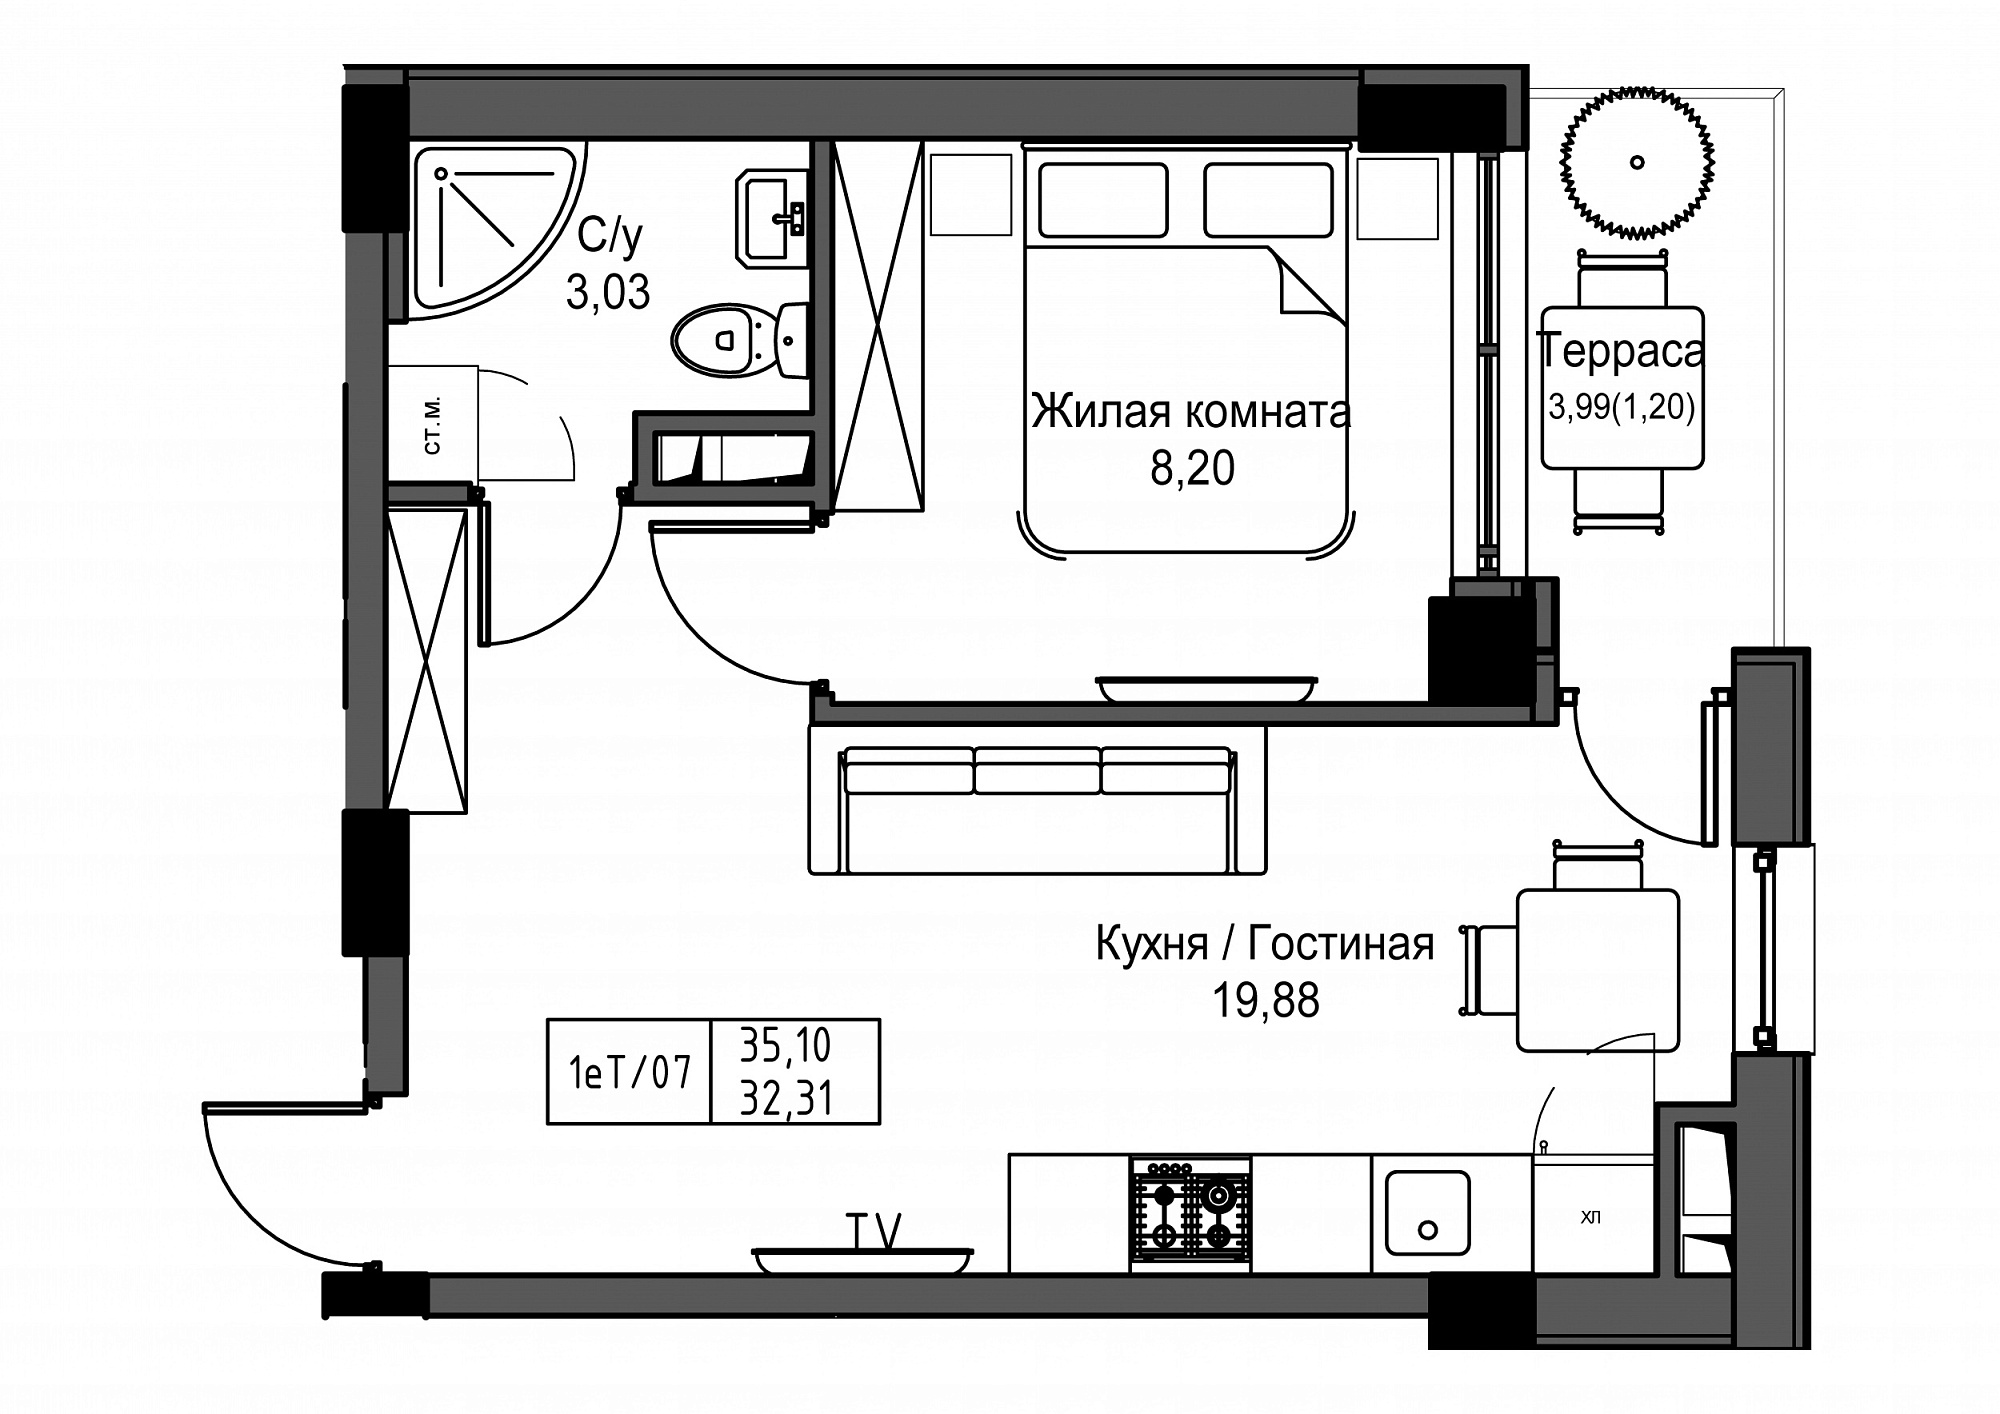 Планировка 1-к квартира площей 32.31м2, UM-003-02/0017.